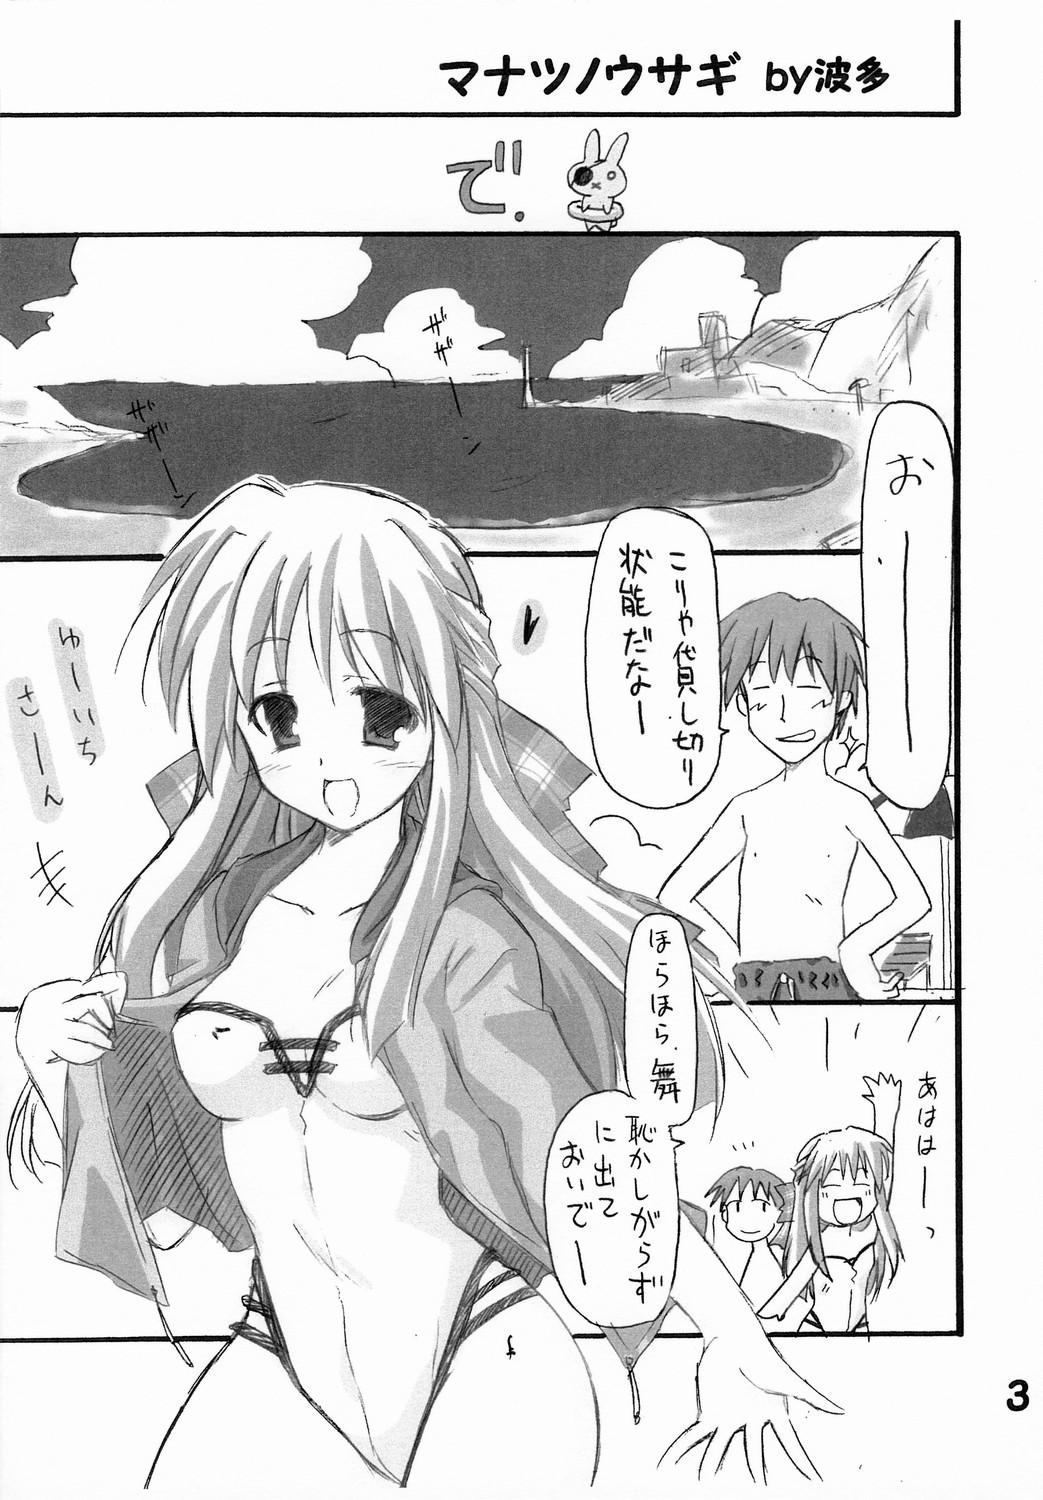 Moaning Haru na no ni - Manatsu no Usagi - Kanon Jacking Off - Page 4